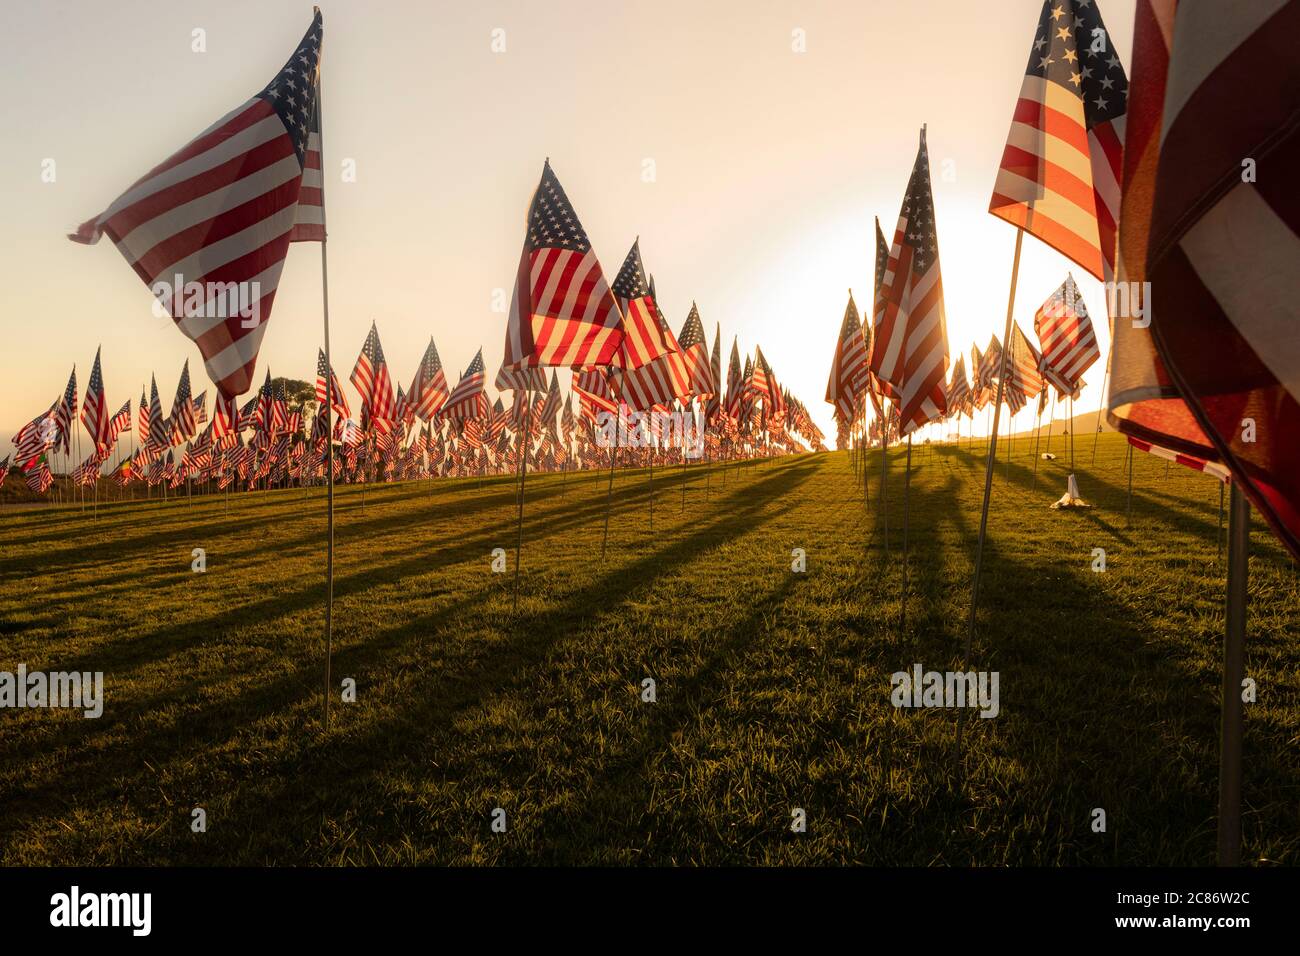 Alumni Park Malibu - Bandiere da ricordare 9/11 attentati terroristici Foto Stock